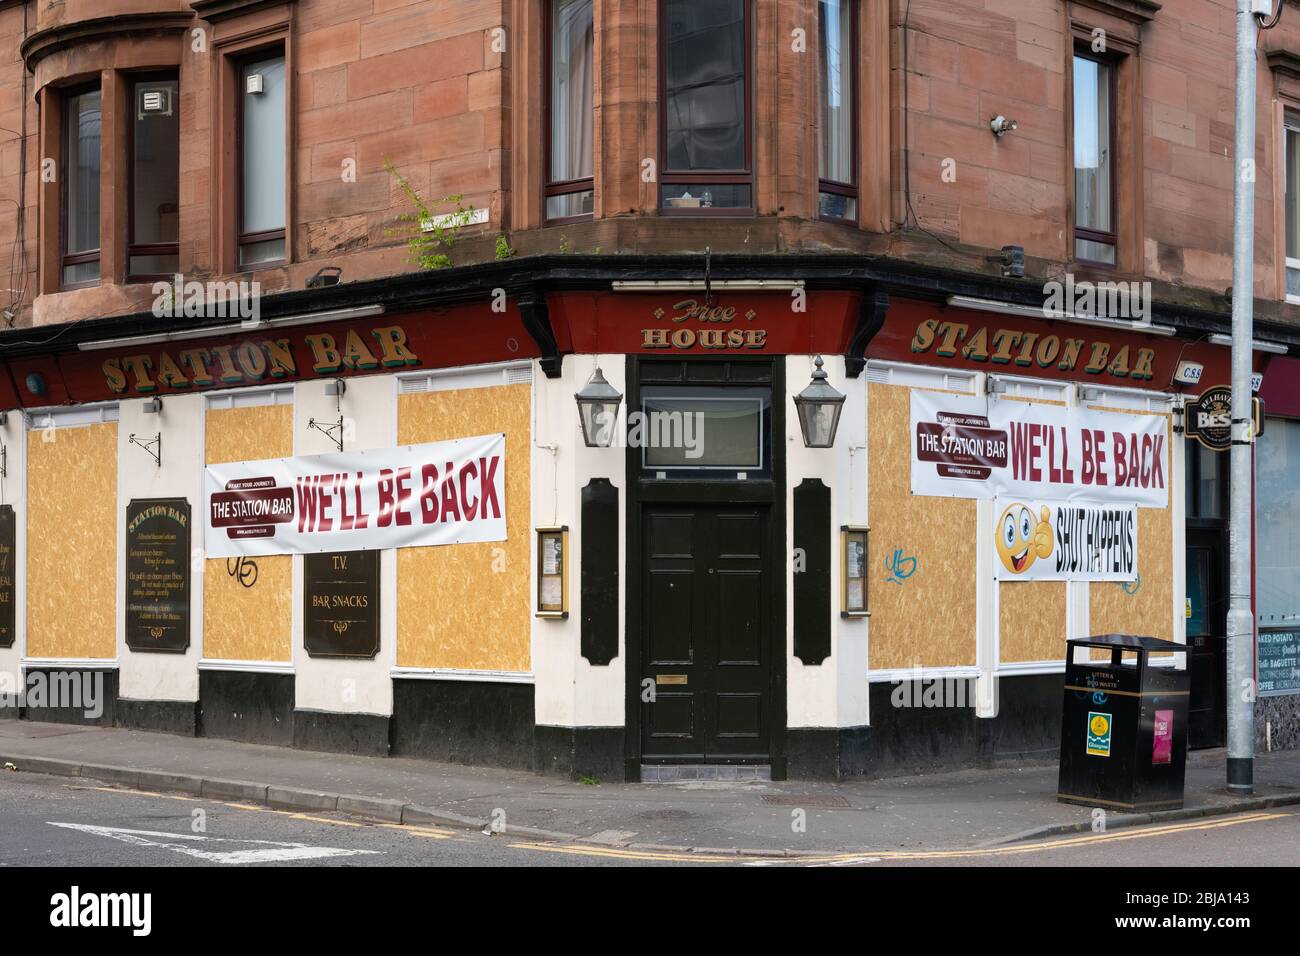 Pub fermé panneau - humoristique - Glasgow pendant le confinement du coronavirus, Écosse, Royaume-Uni Banque D'Images